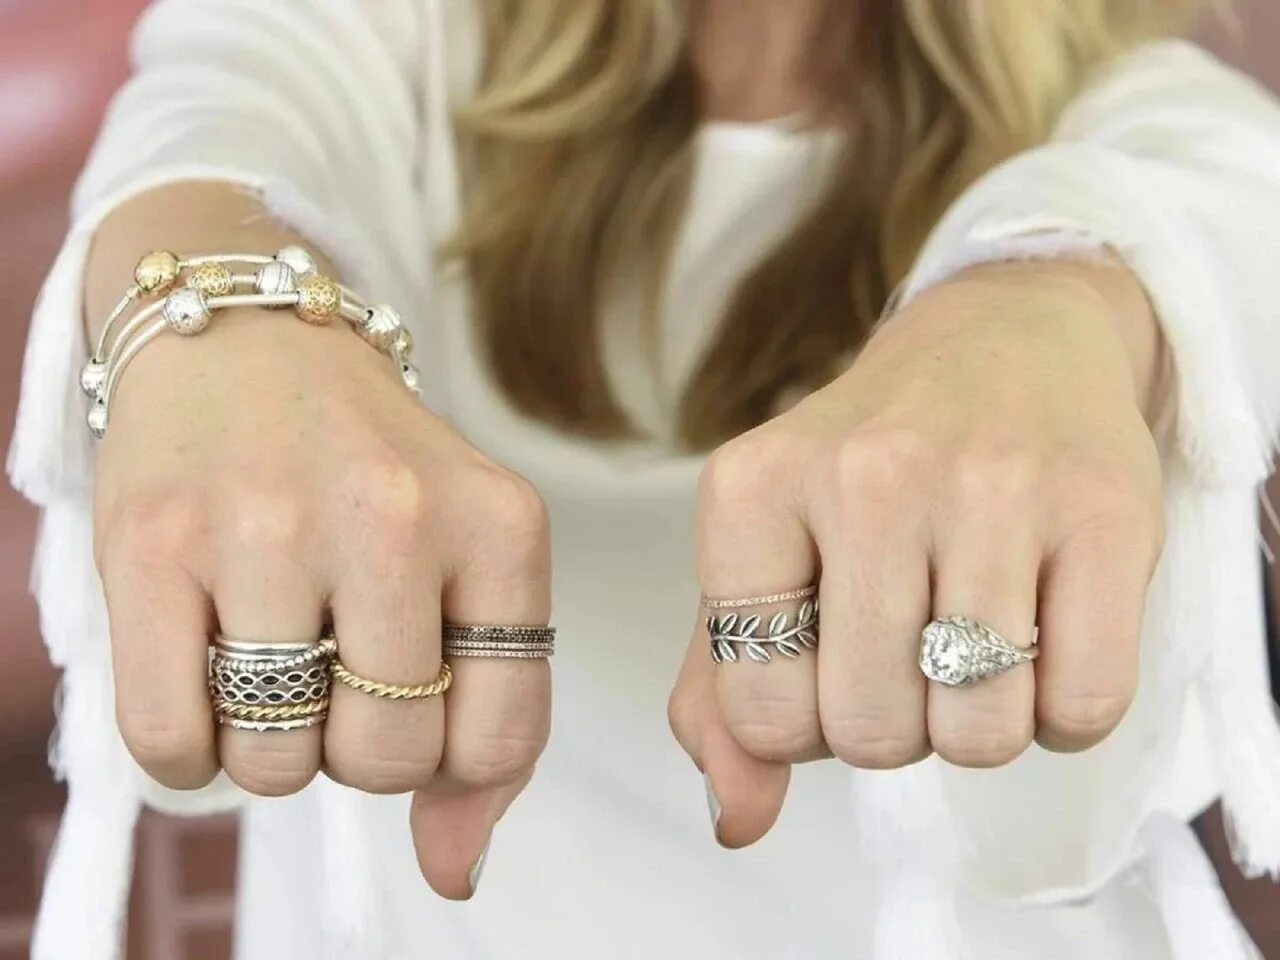 Браслет Пандора Дубайское золото и серебро. Модные кольца. Кольцо на руке. Украшения кольца на руках. Надеты кольца золотые